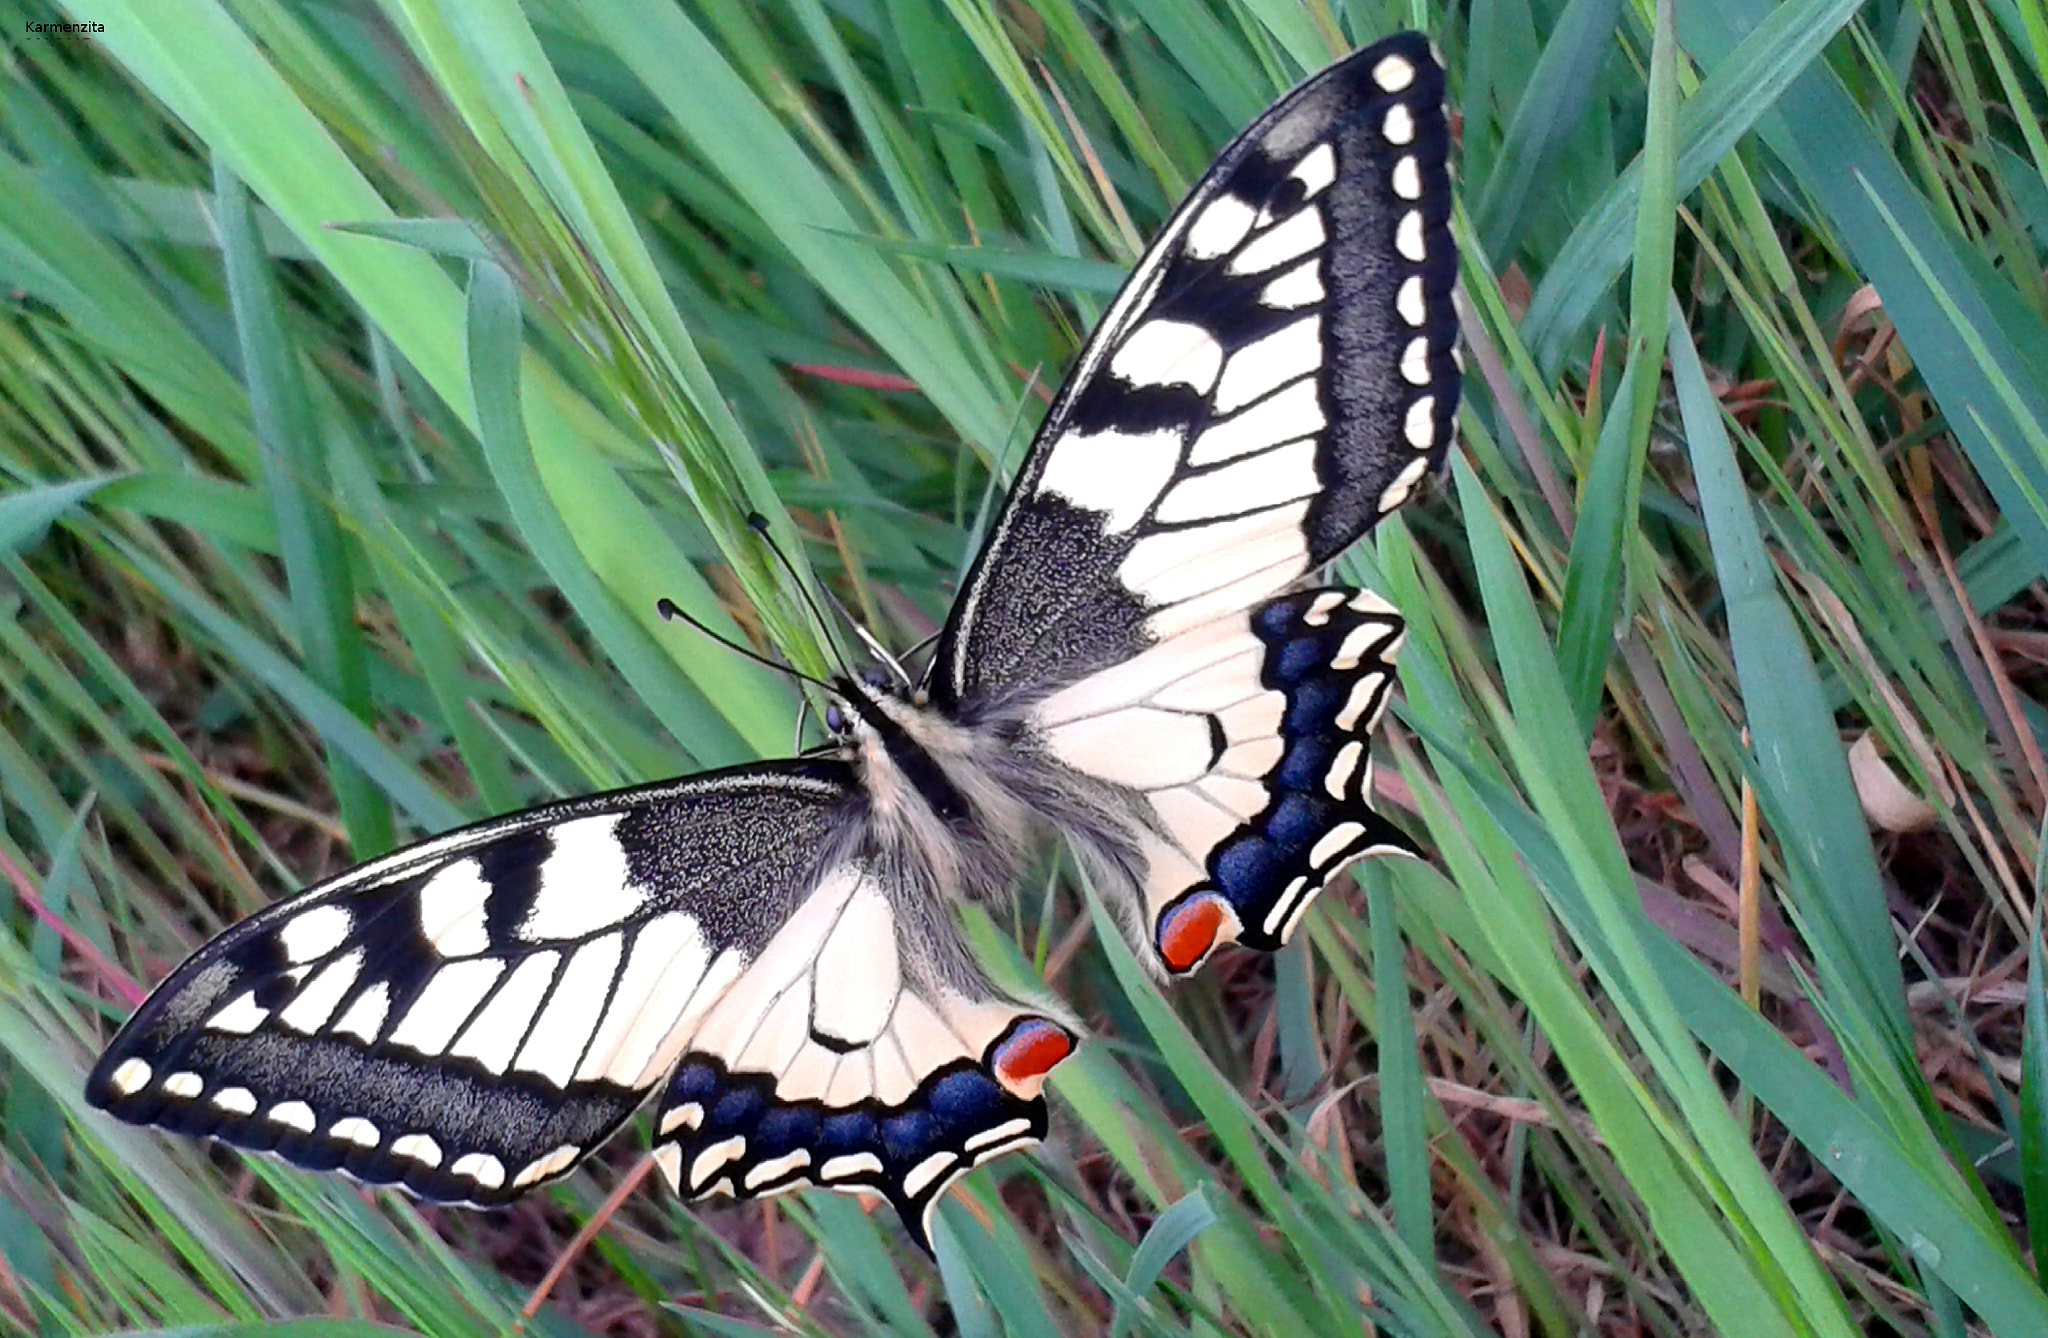 Samsung Galaxy S3 Mini sample photo. Butterfly farfalla photography